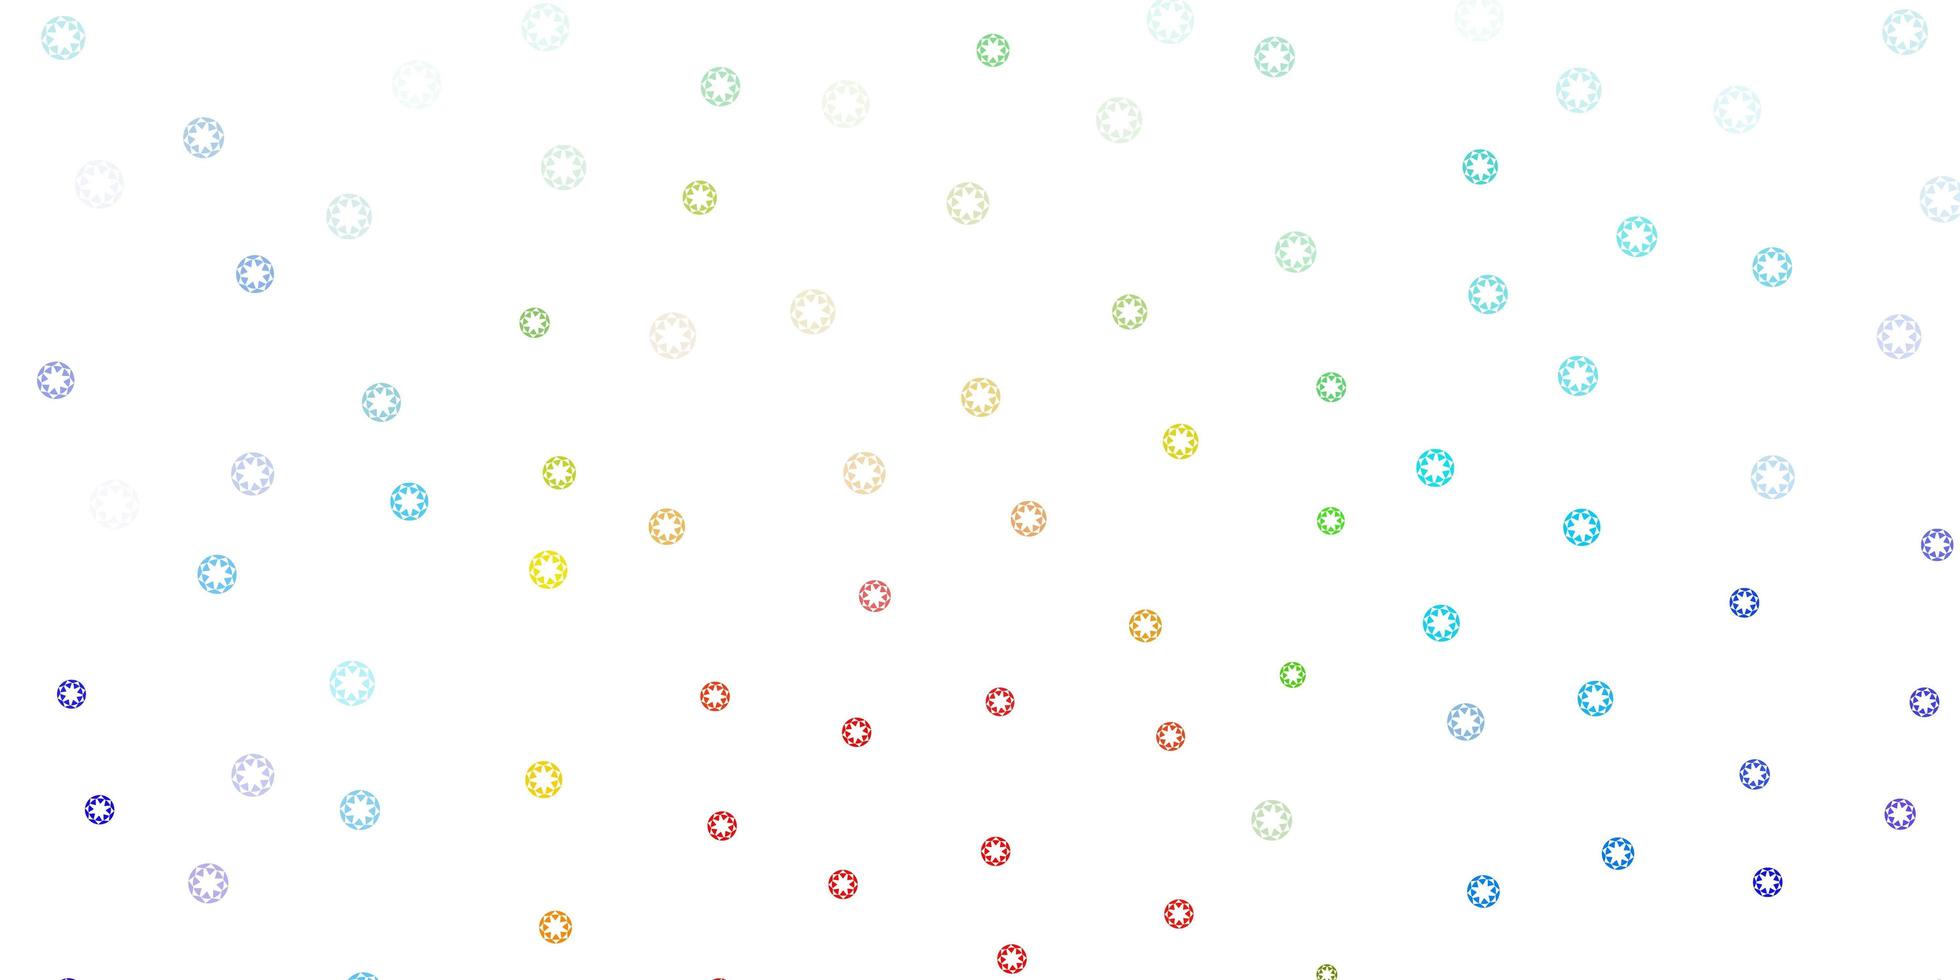 layout vettoriale multicolore chiaro con forme circolari.